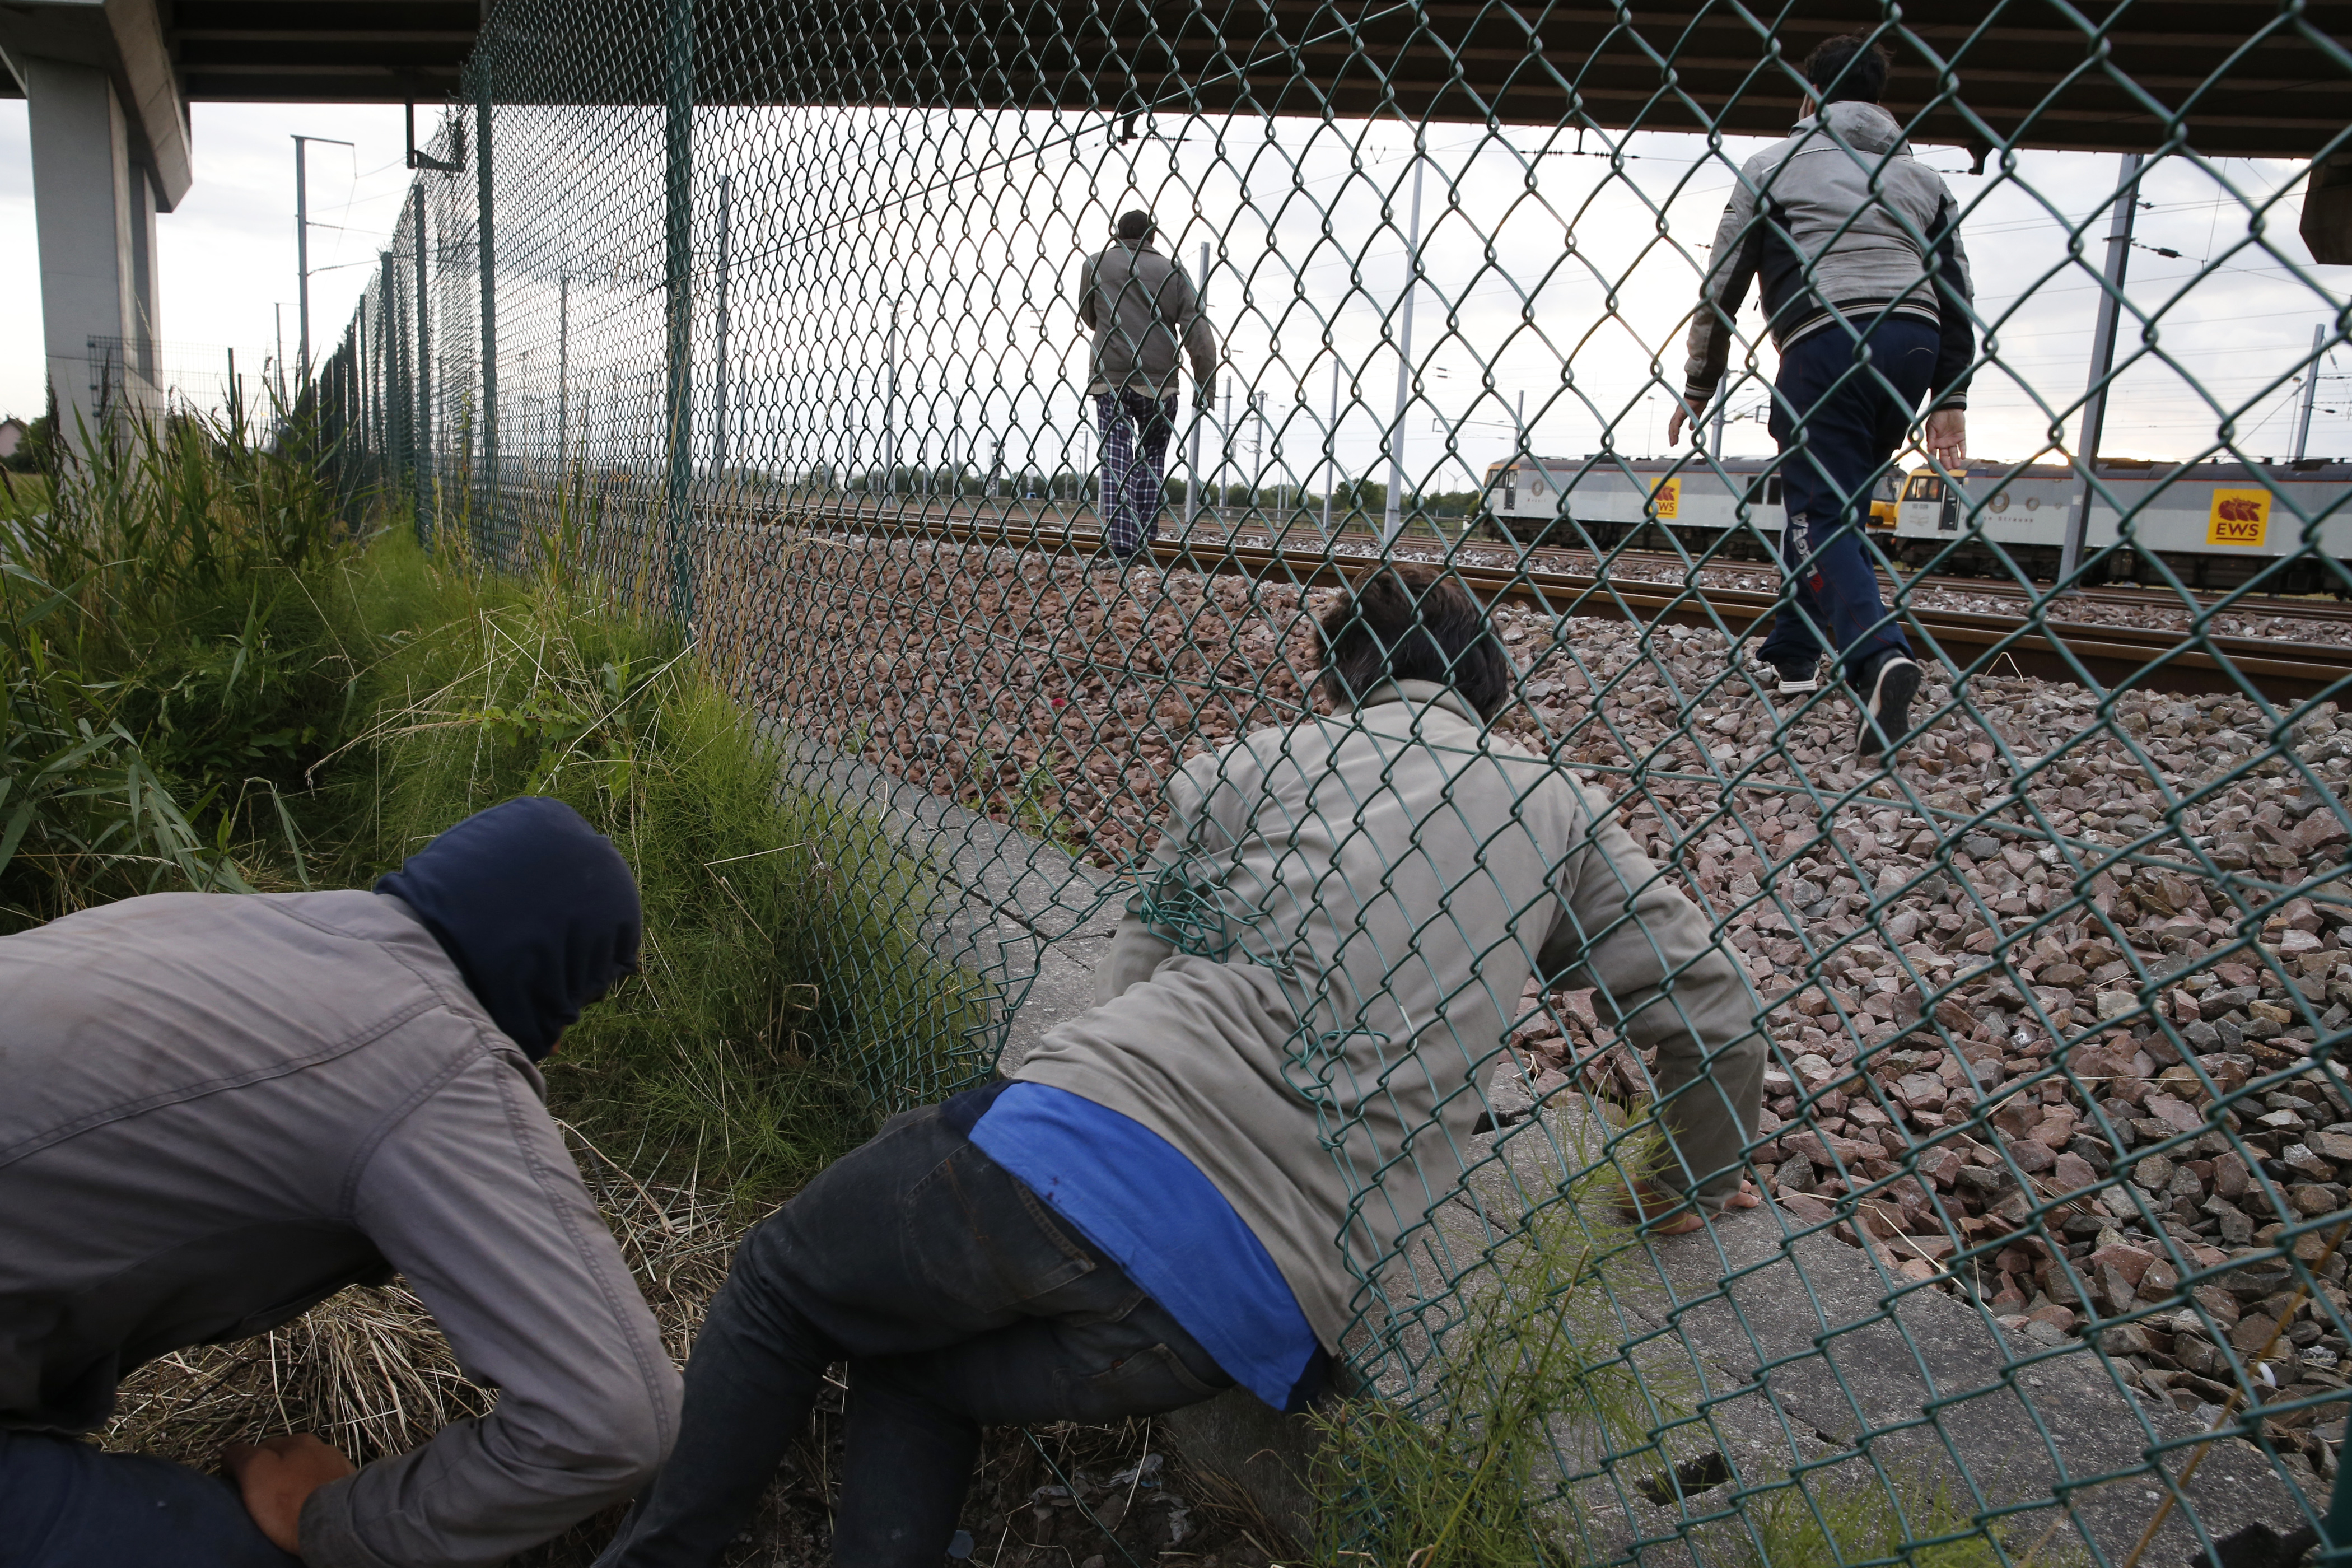 Europe et choc migratoire 2011-2020: les étonnants chiffres qui déjouent les préjugés